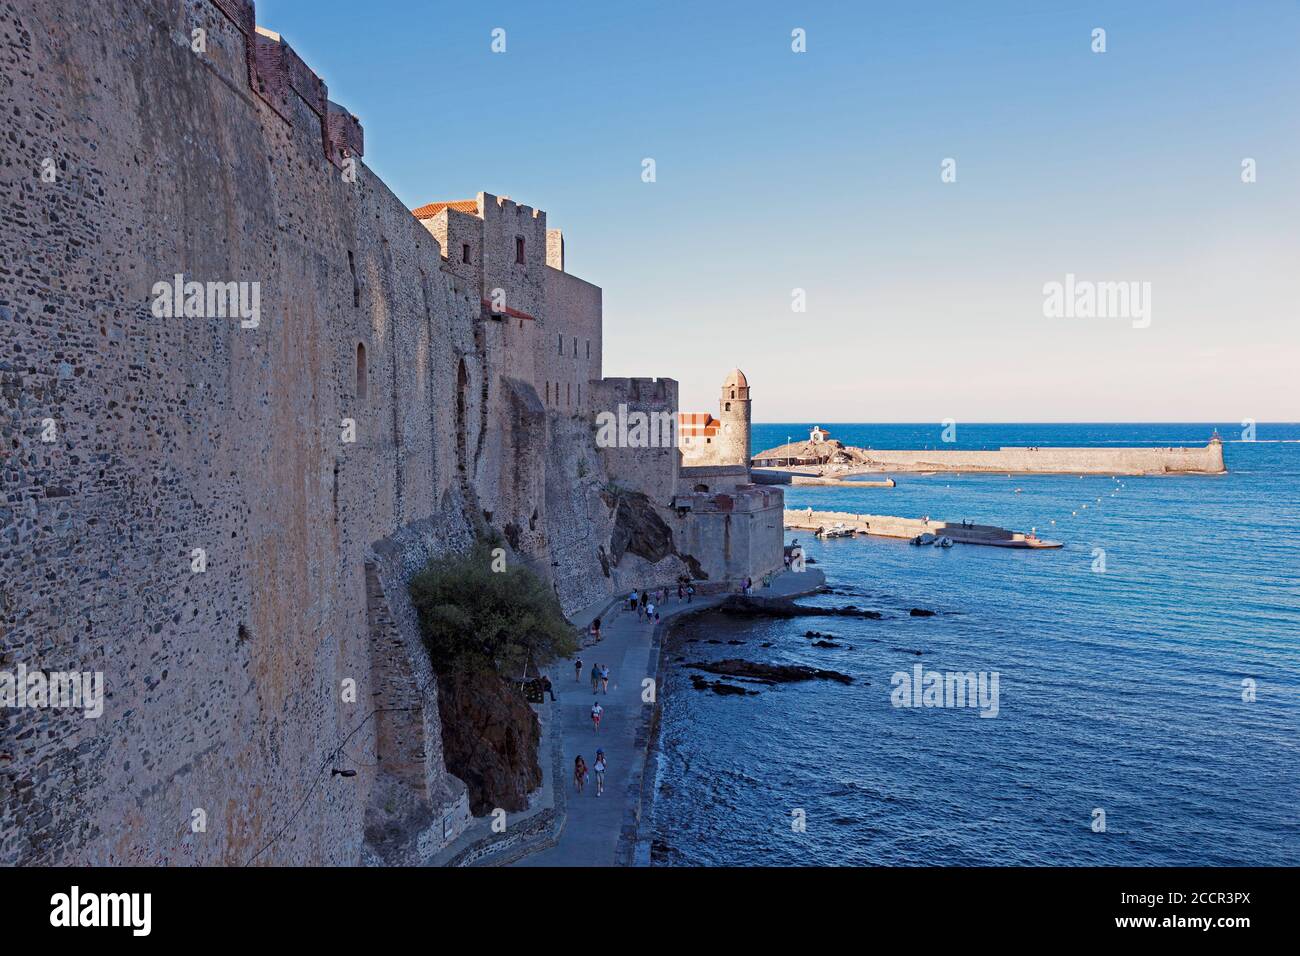 Las imponentes murallas del Château Royal de Collioure en la pintoresca localidad costera y el puerto de Collioure en el sur de Francia. Foto de stock